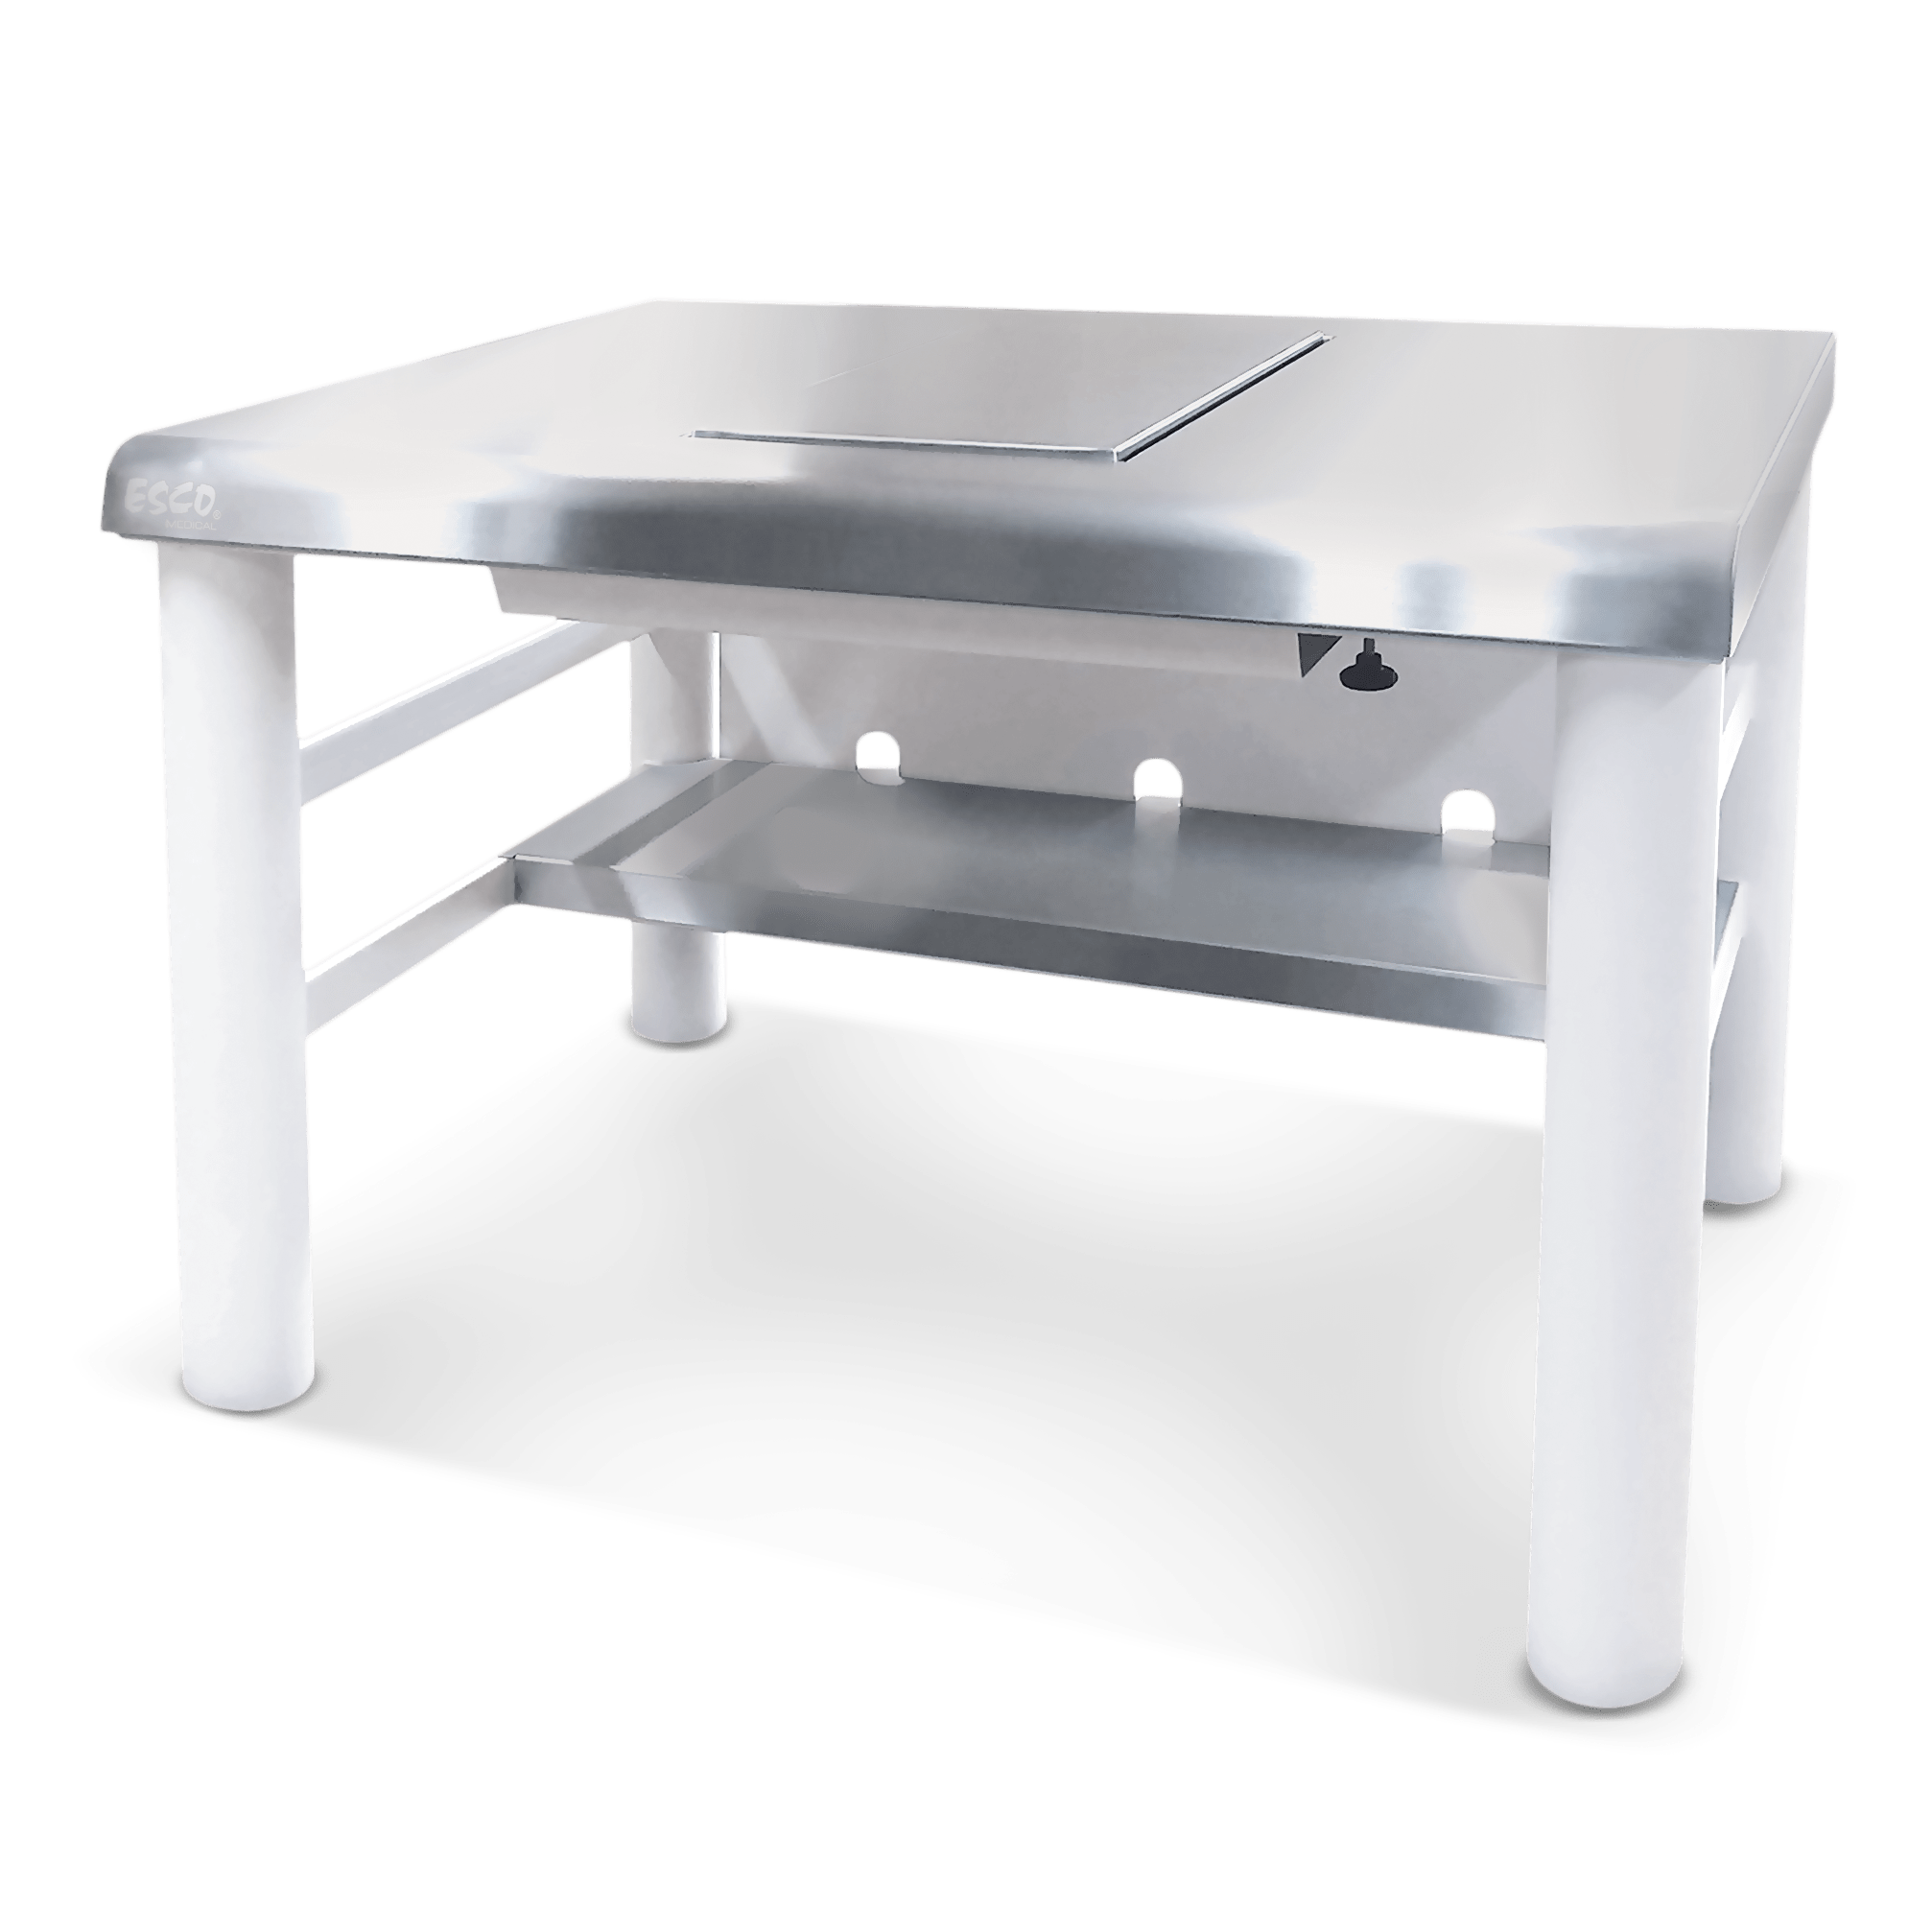 Table anti-vibration - LabMaterials by Blanc-Labo SA